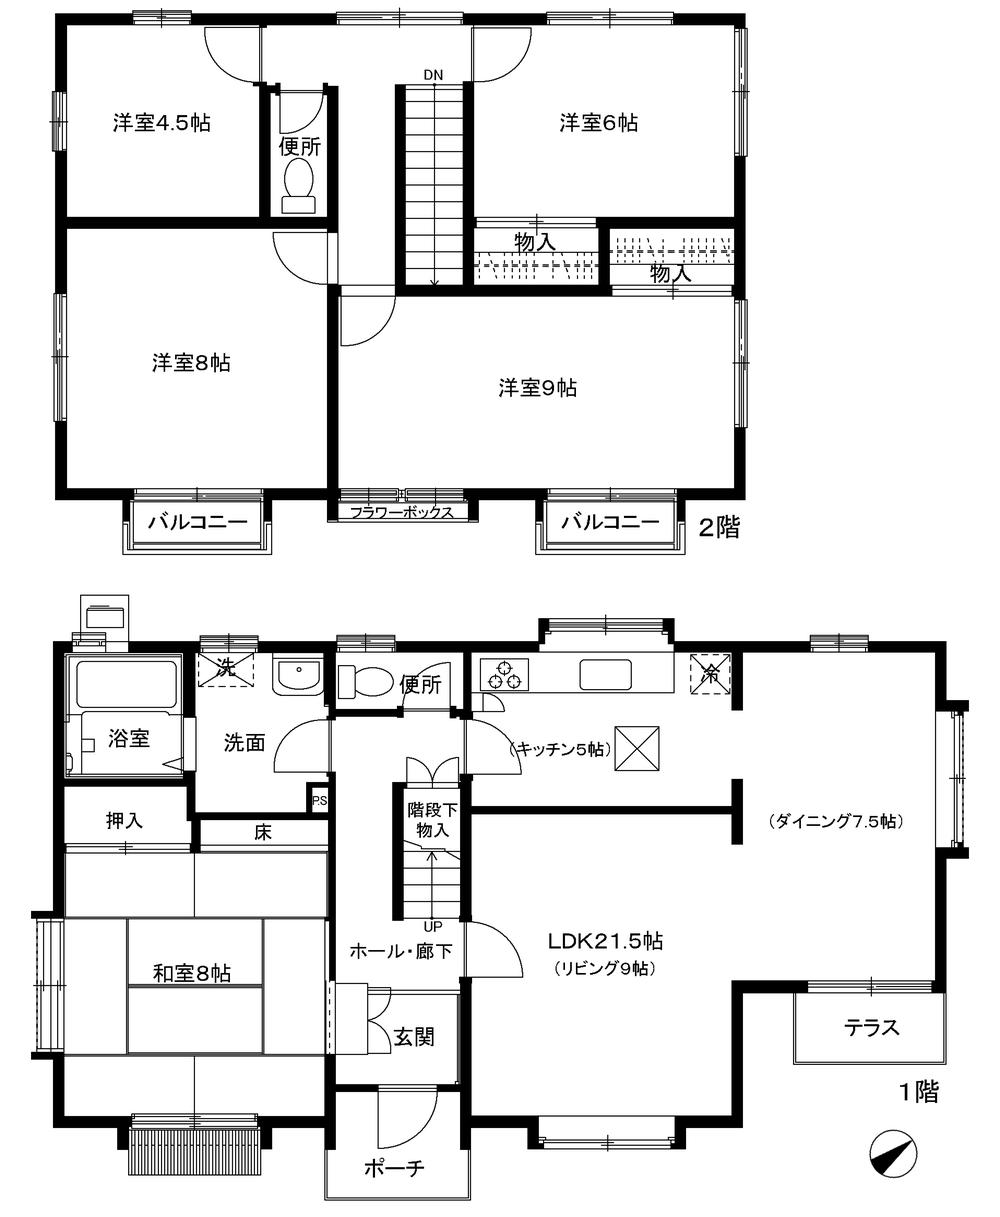 Floor plan. 16.5 million yen, 5LDK, Land area 151.43 sq m , Building area 133.28 sq m